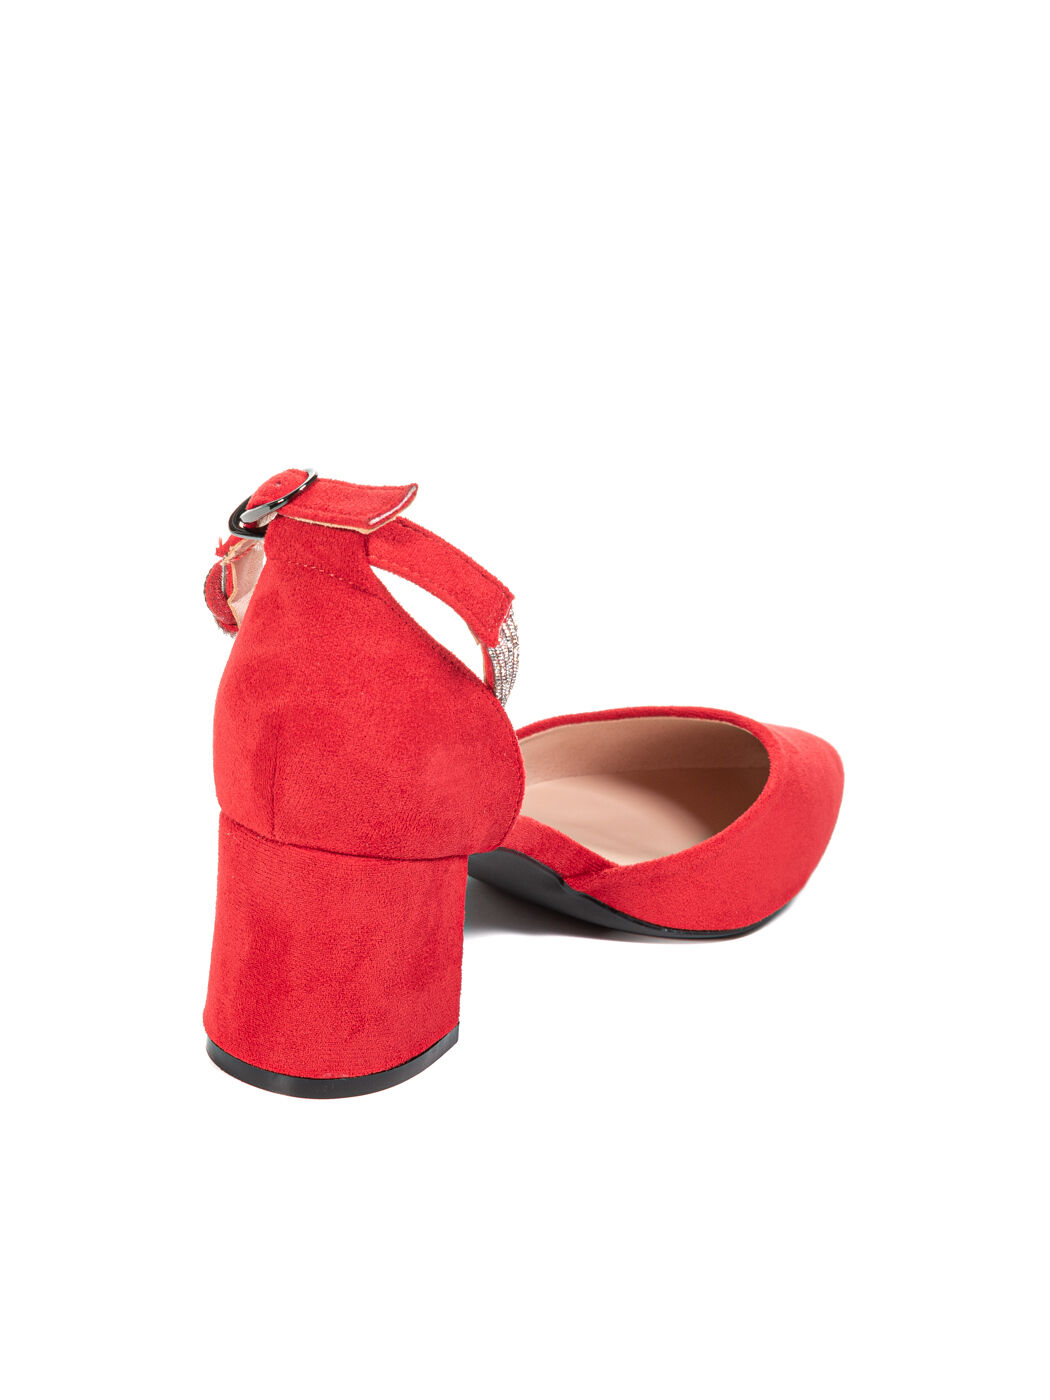 Туфли лодочки женские красные экозамша каблук устойчивый лето 1-red-M вид 2